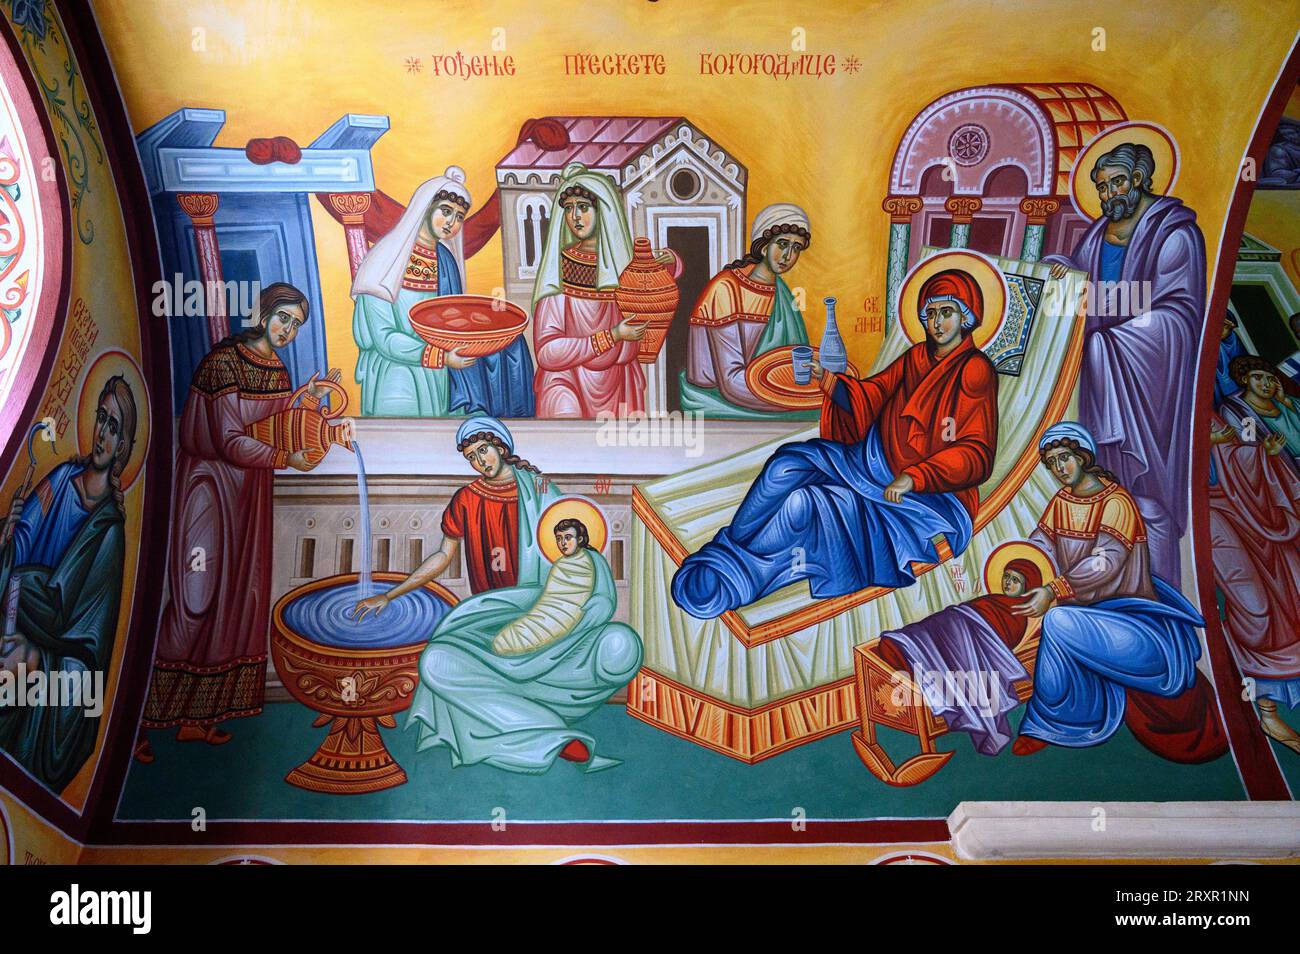 The Nativity of the Theotokos (the birth of the Virgin Mary). The Žitomislić Monastery, Bosnia and Herzegovina. Stock Photo